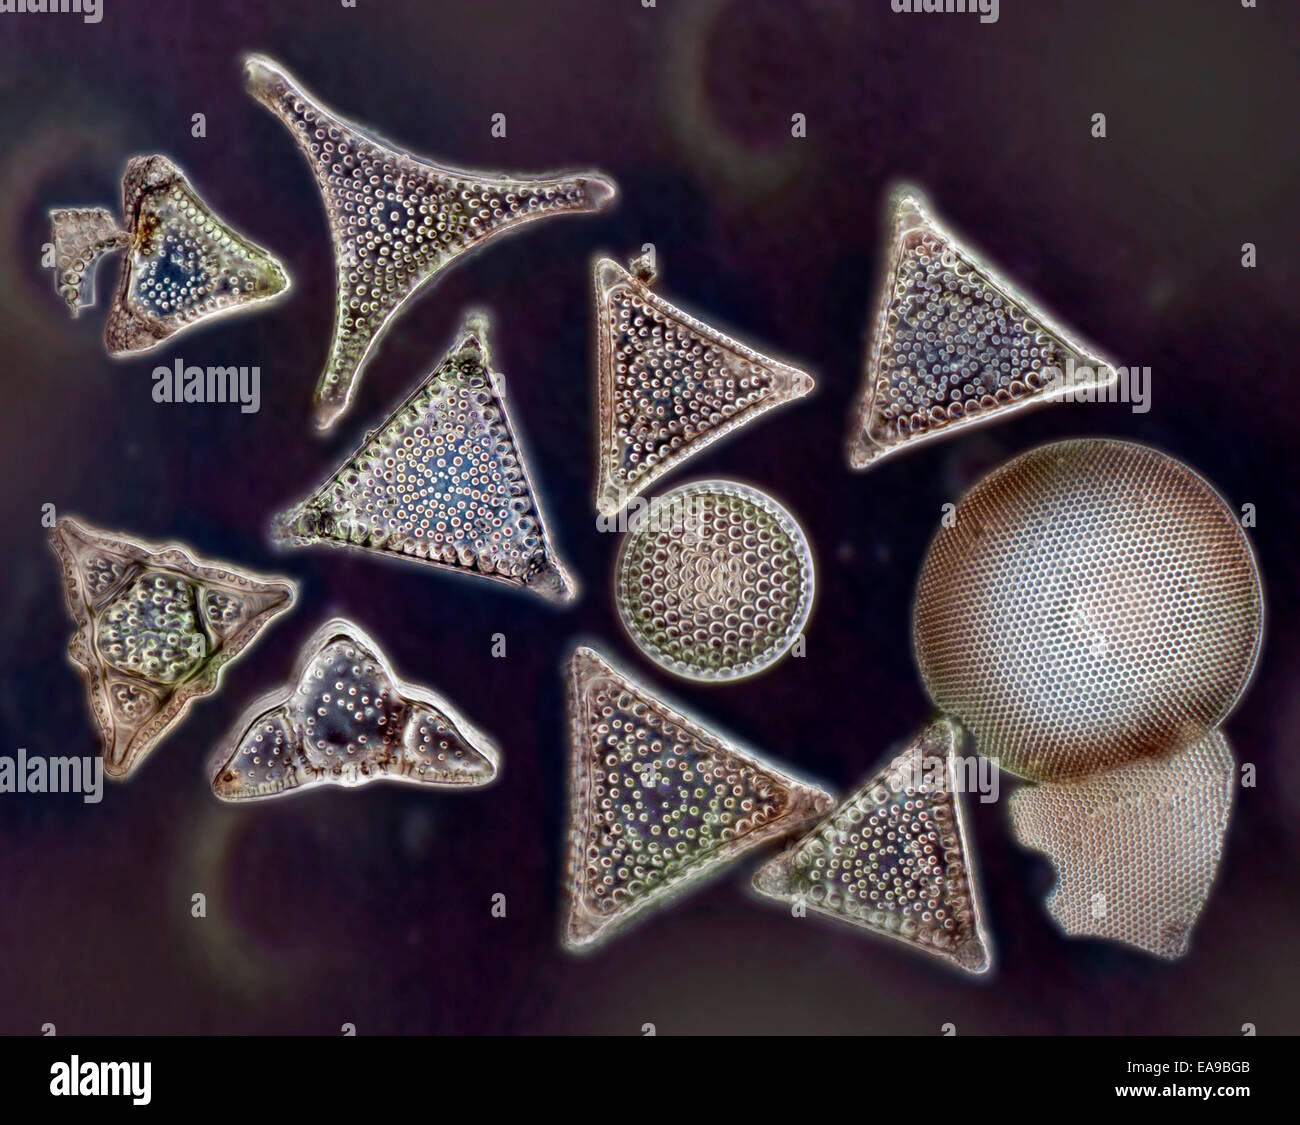 La biodiversité des diatomées, une variété de formes, darkfield photomicrographie Banque D'Images